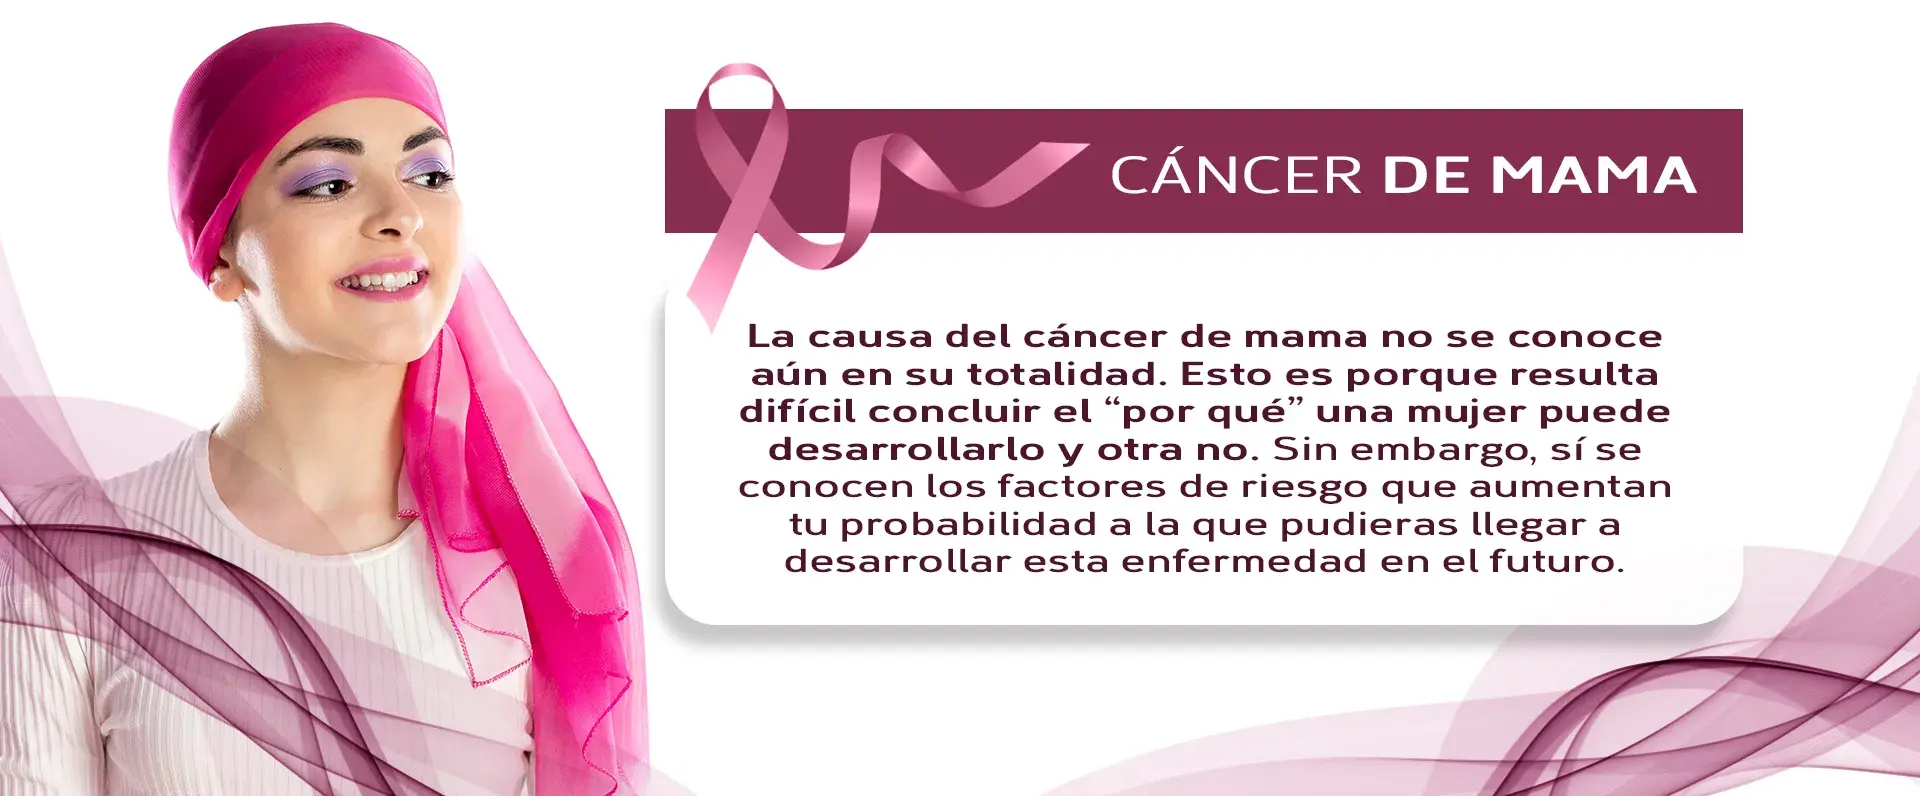 No se sabe la razón del por qué del cáncer, pero existen varios factores de riesgo.